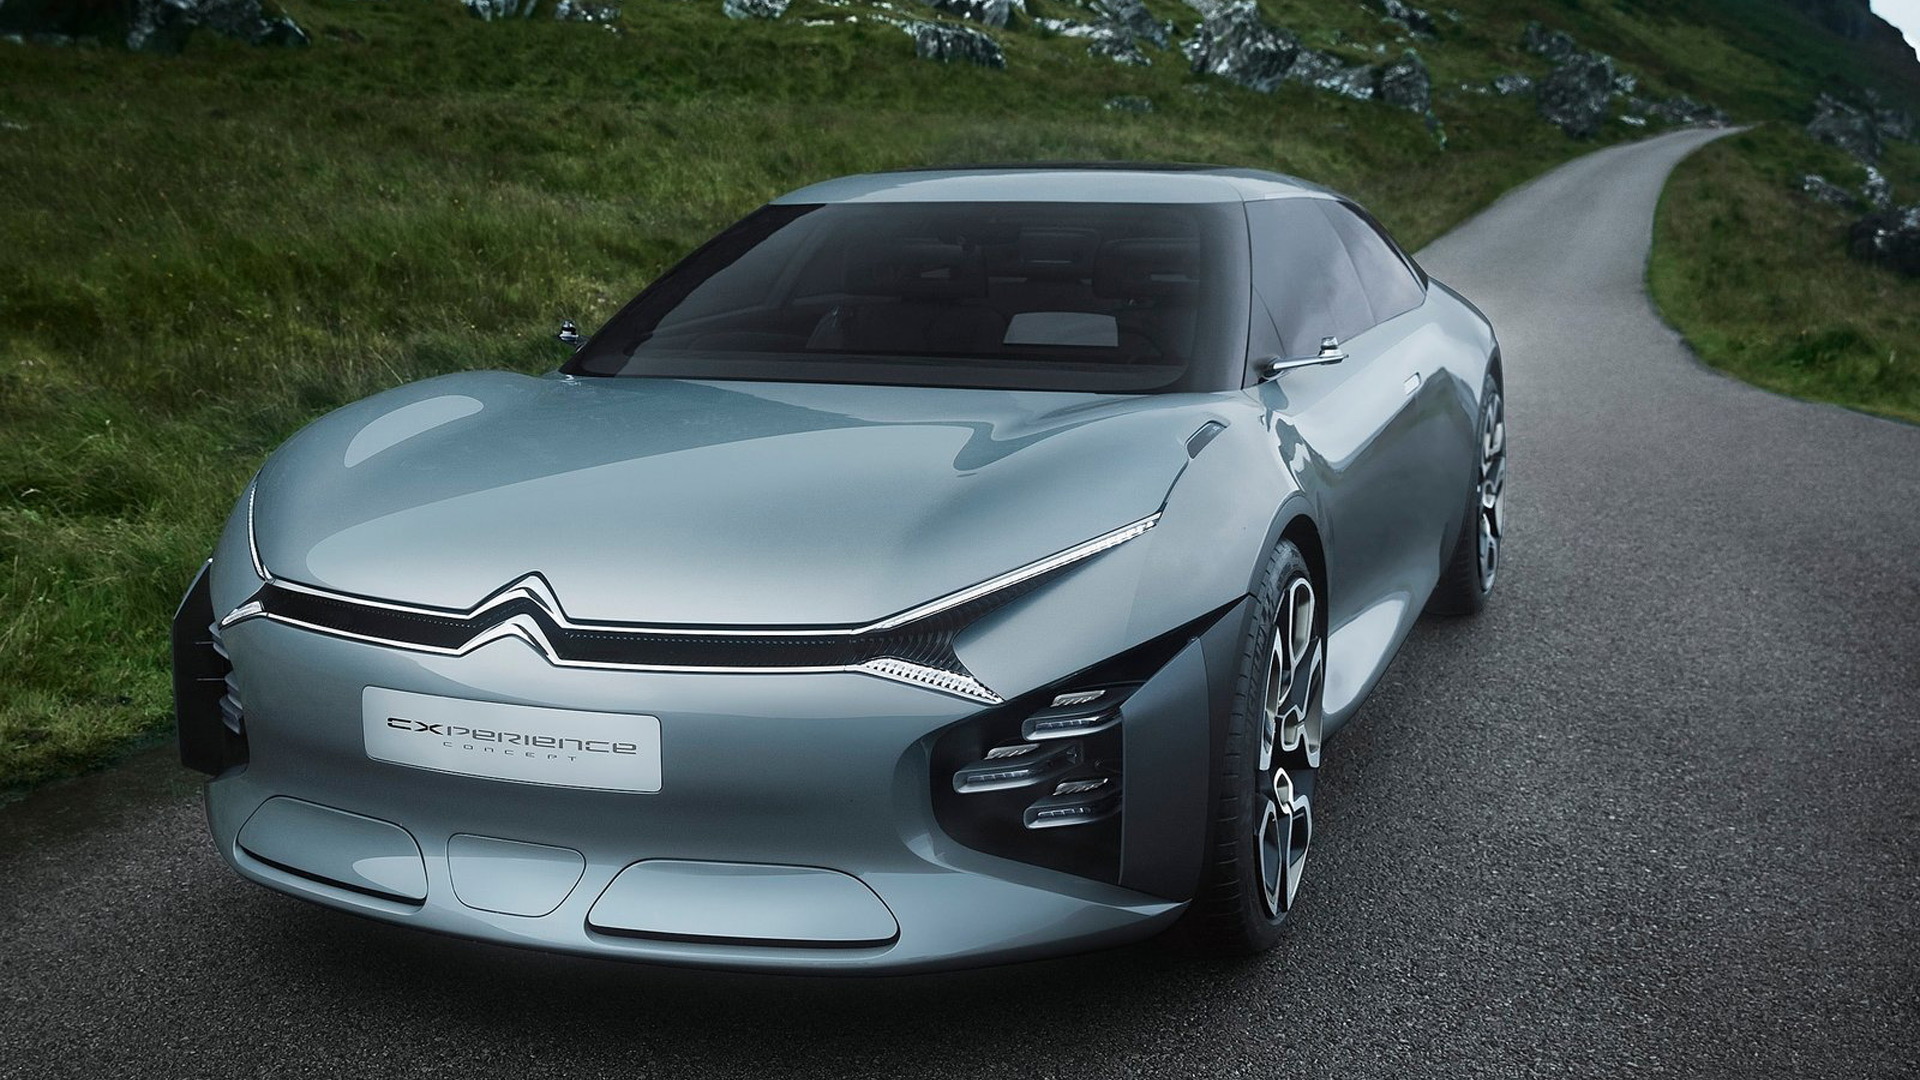 Citroën Cxperience concept, 2016 Paris auto show